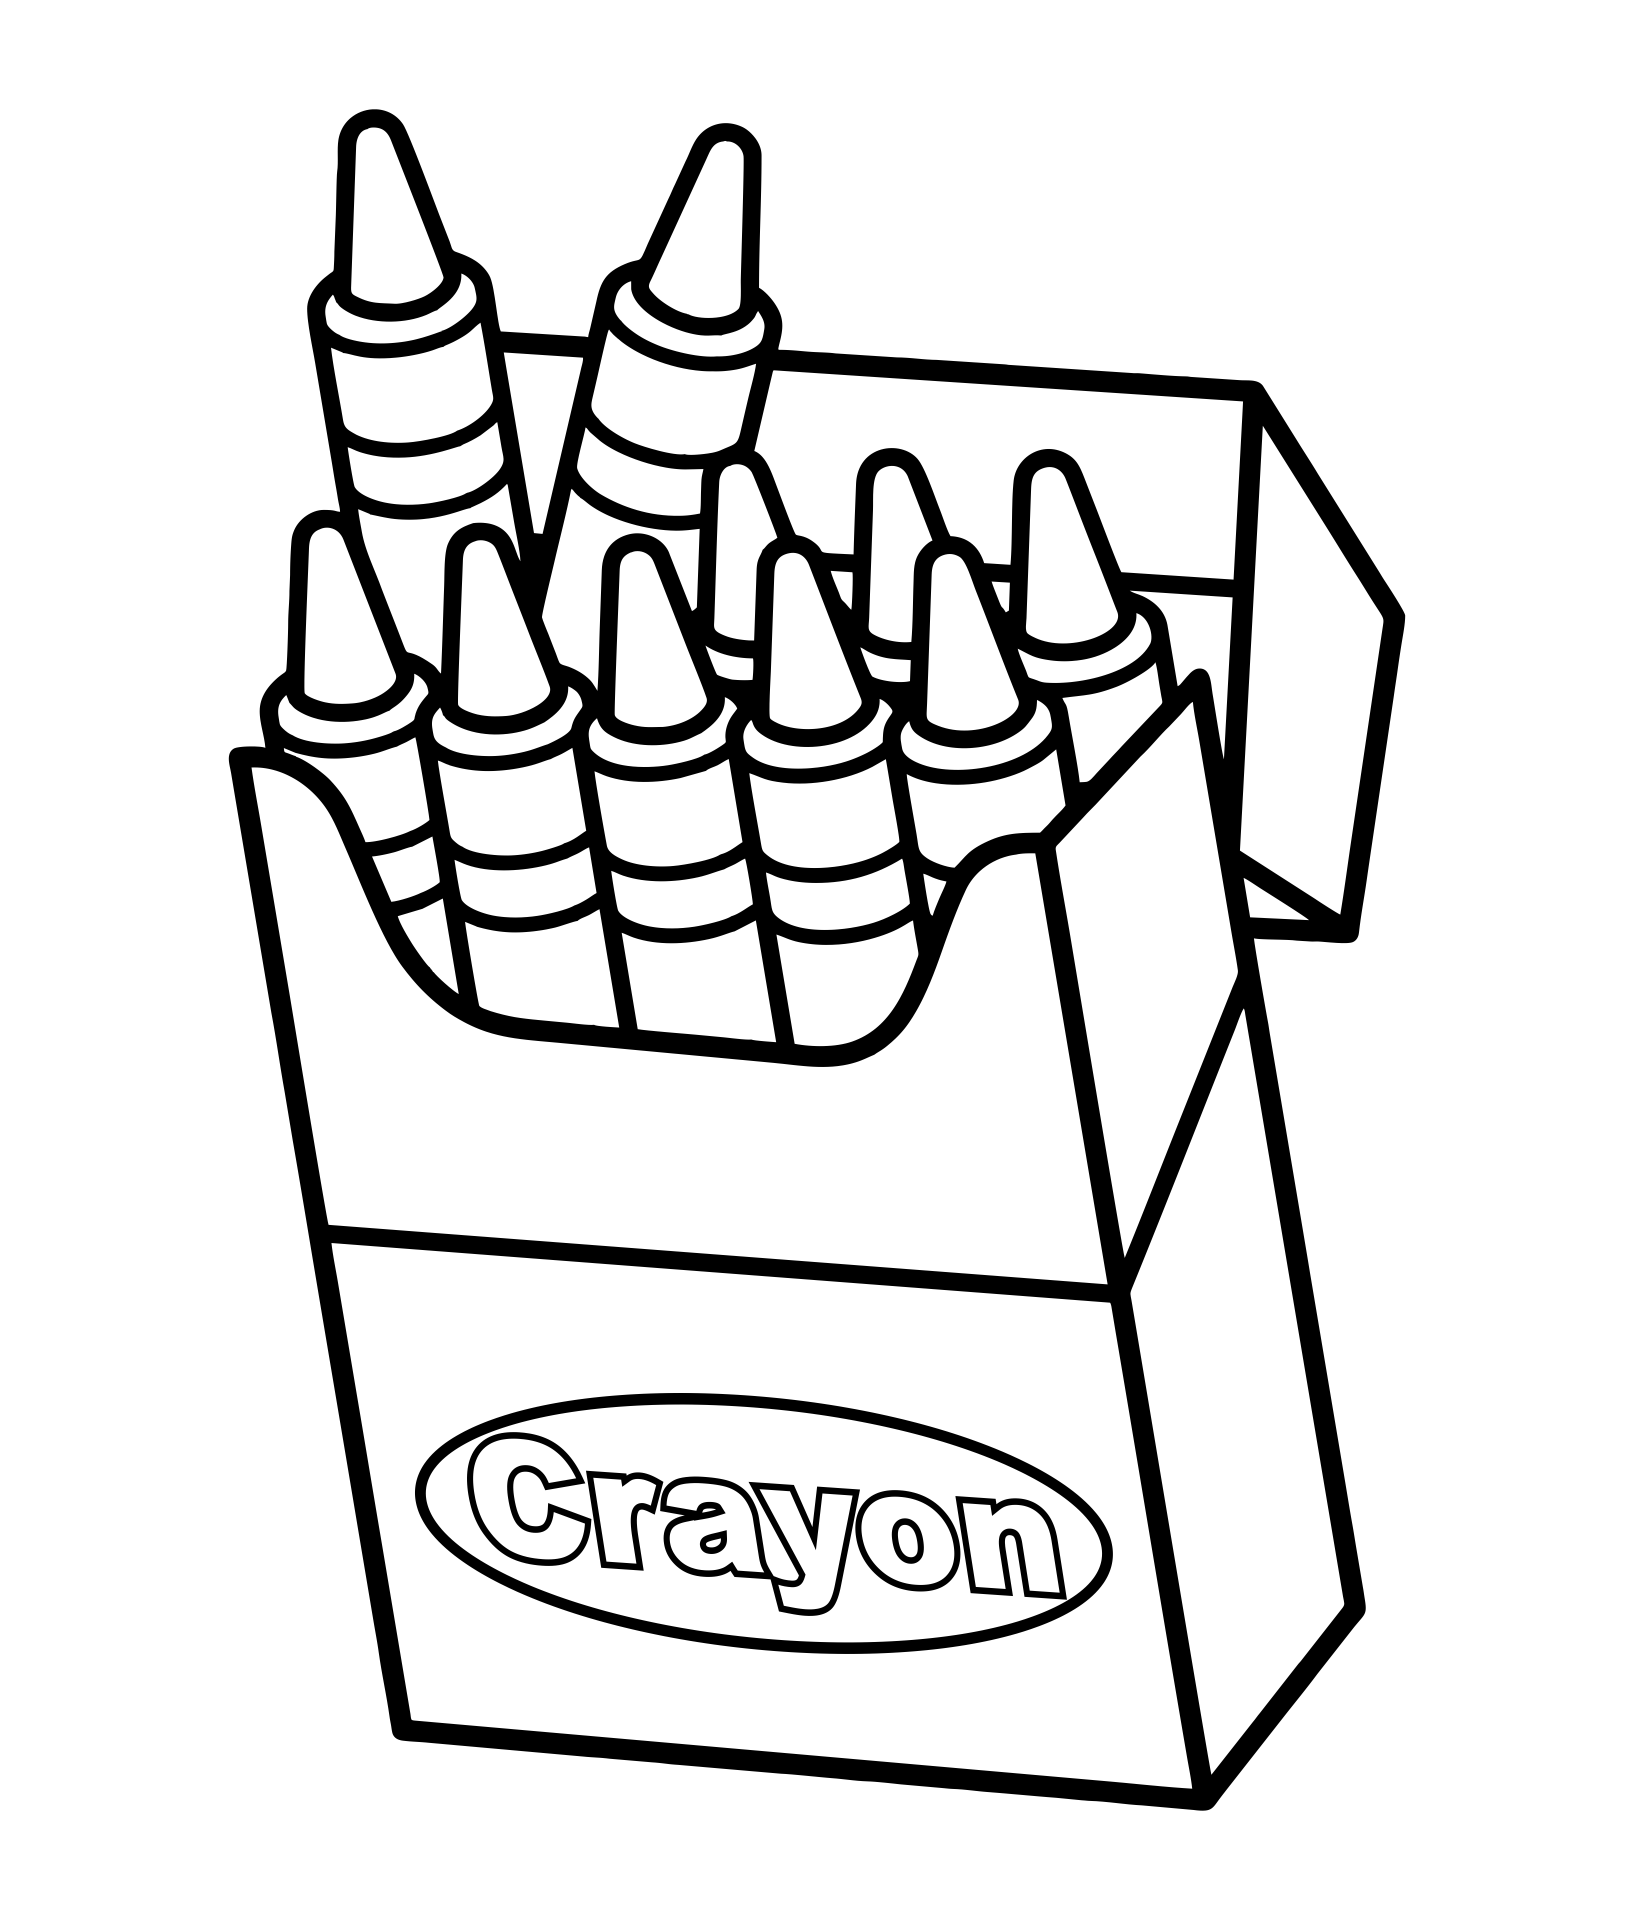 crayon-template-printable-free-printable-world-holiday